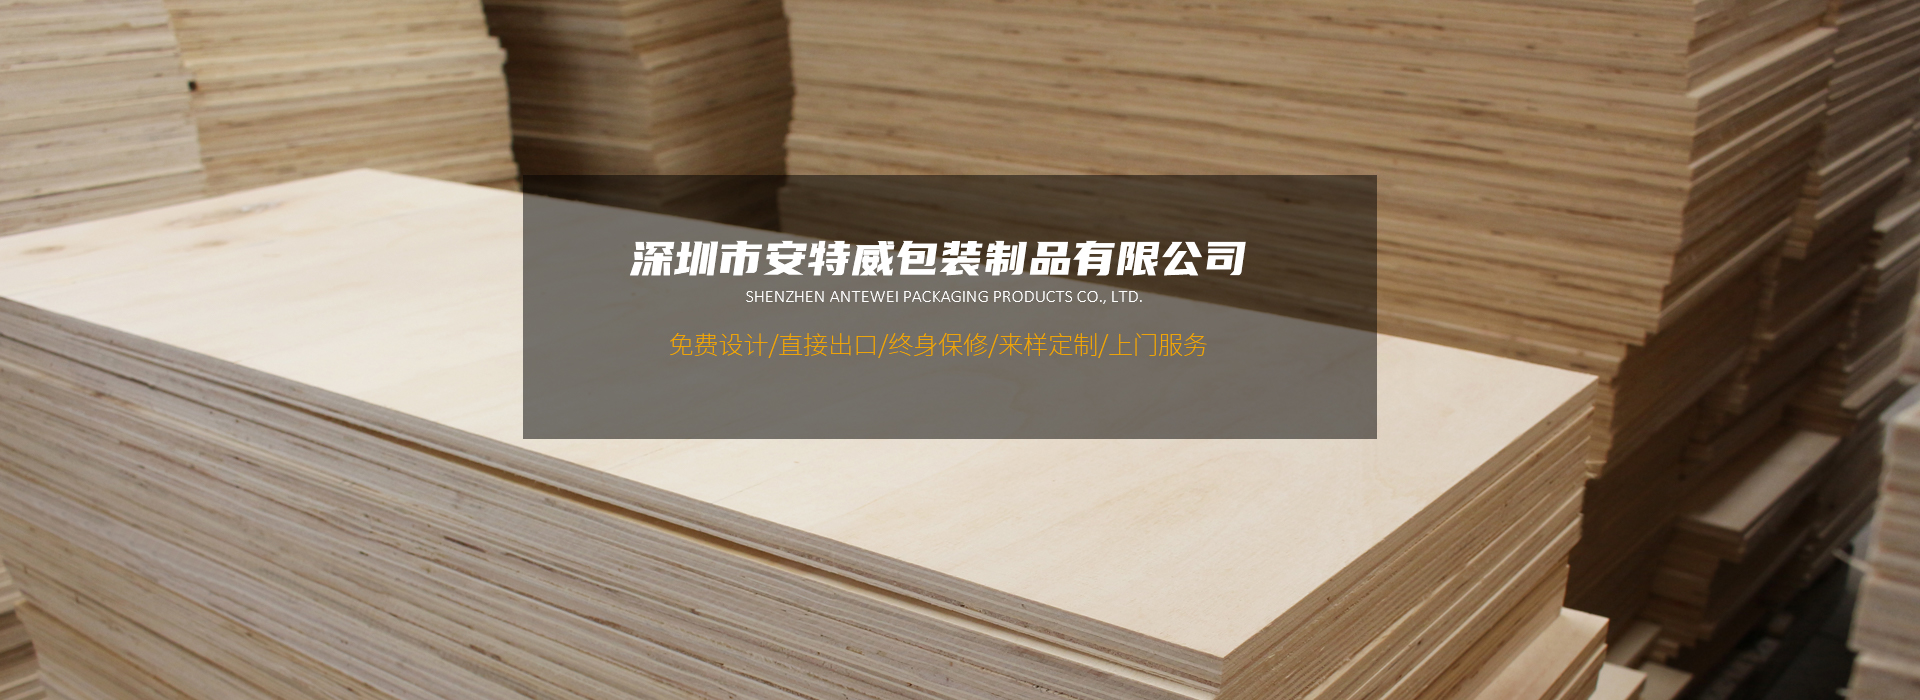 木卡板厂家,胶合卡板,木包装箱,深圳市安特威包装制品有限公司